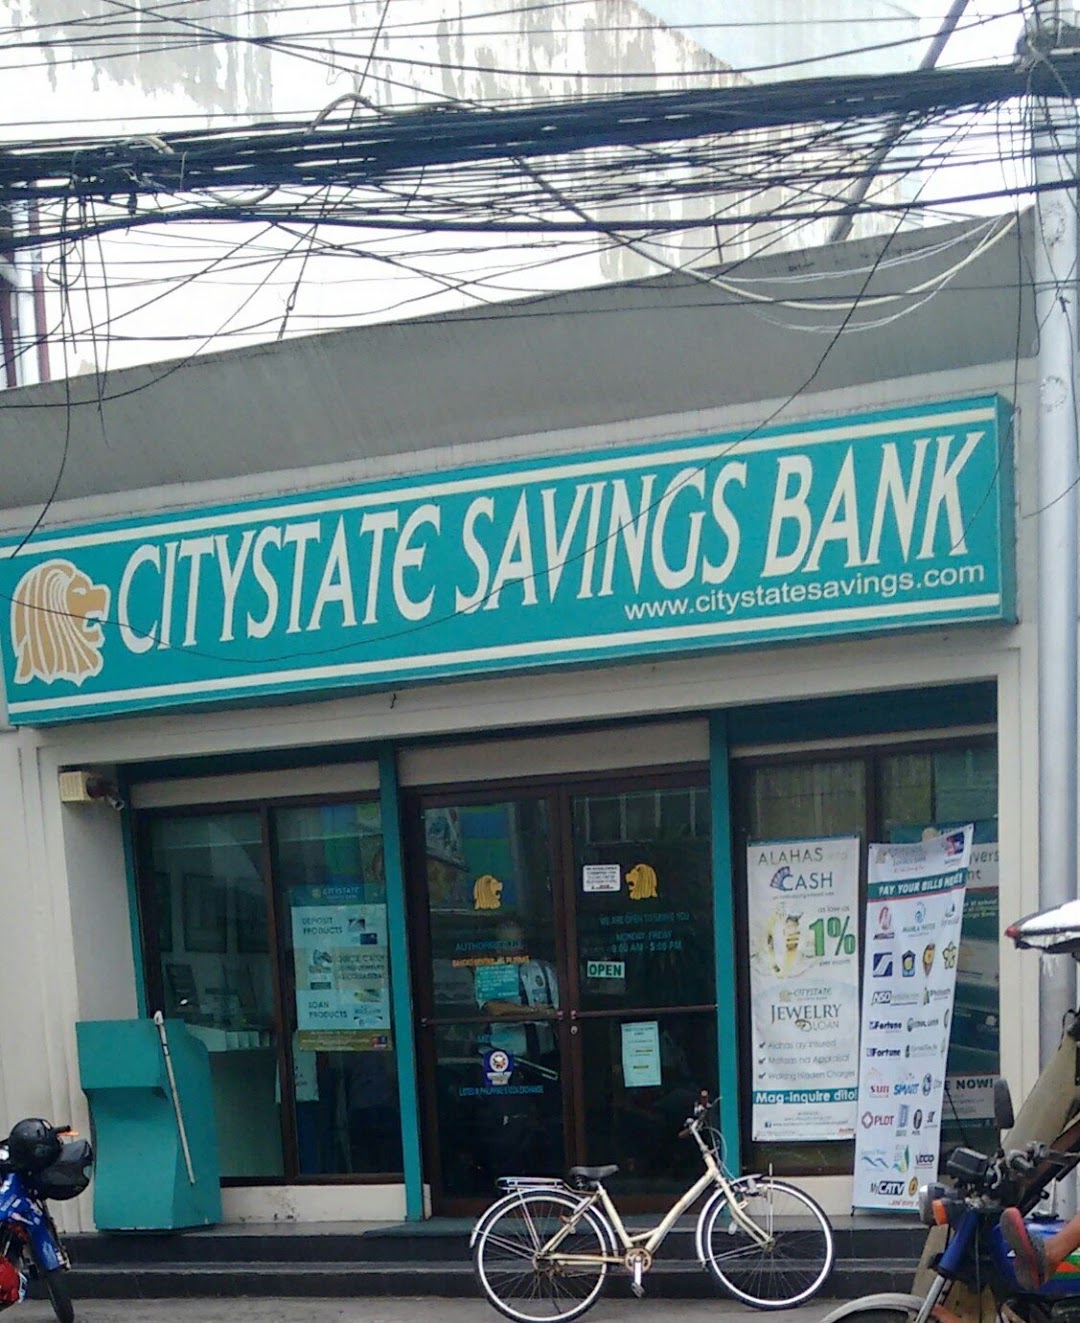 Citystate Savings Bank